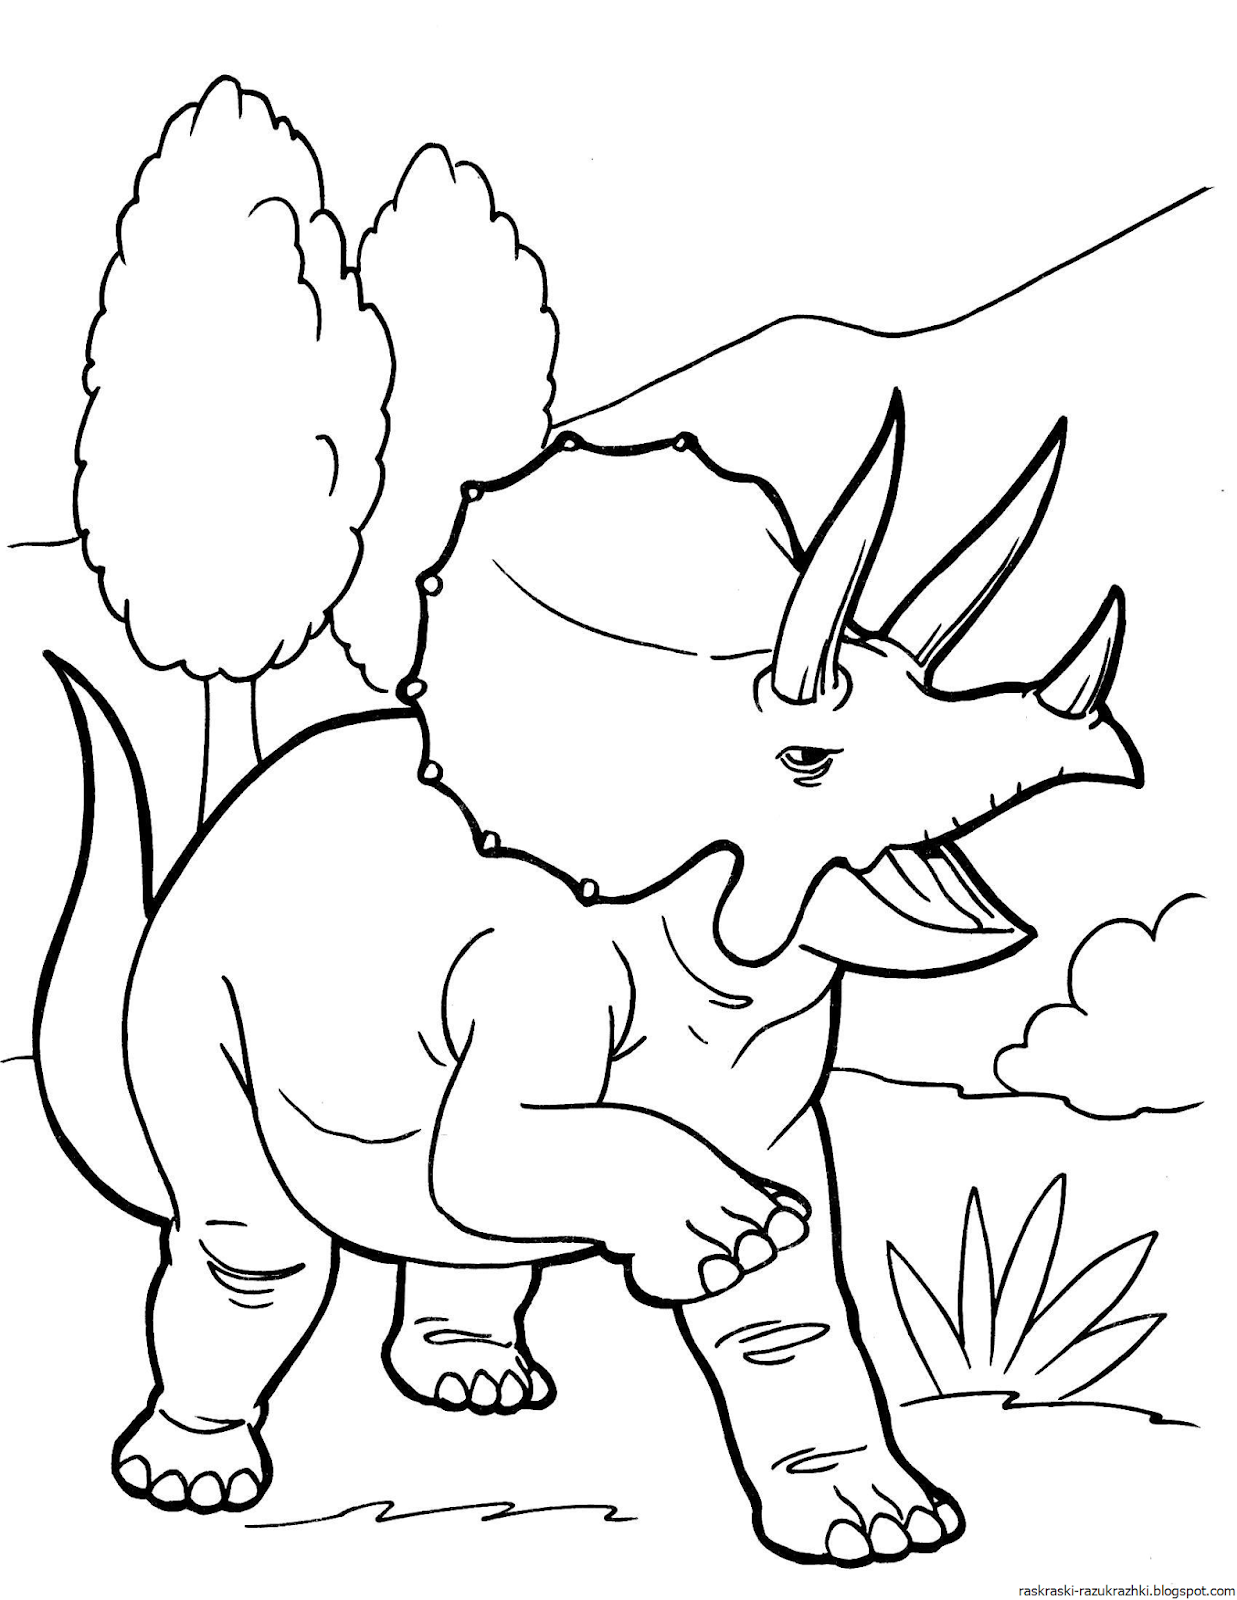 Раскраски динозавры а4. Динозавры / раскраска. Динозавр раскраска для детей. Раскраски для мальчиков динозавры. Динозаврики раскраска для детей.